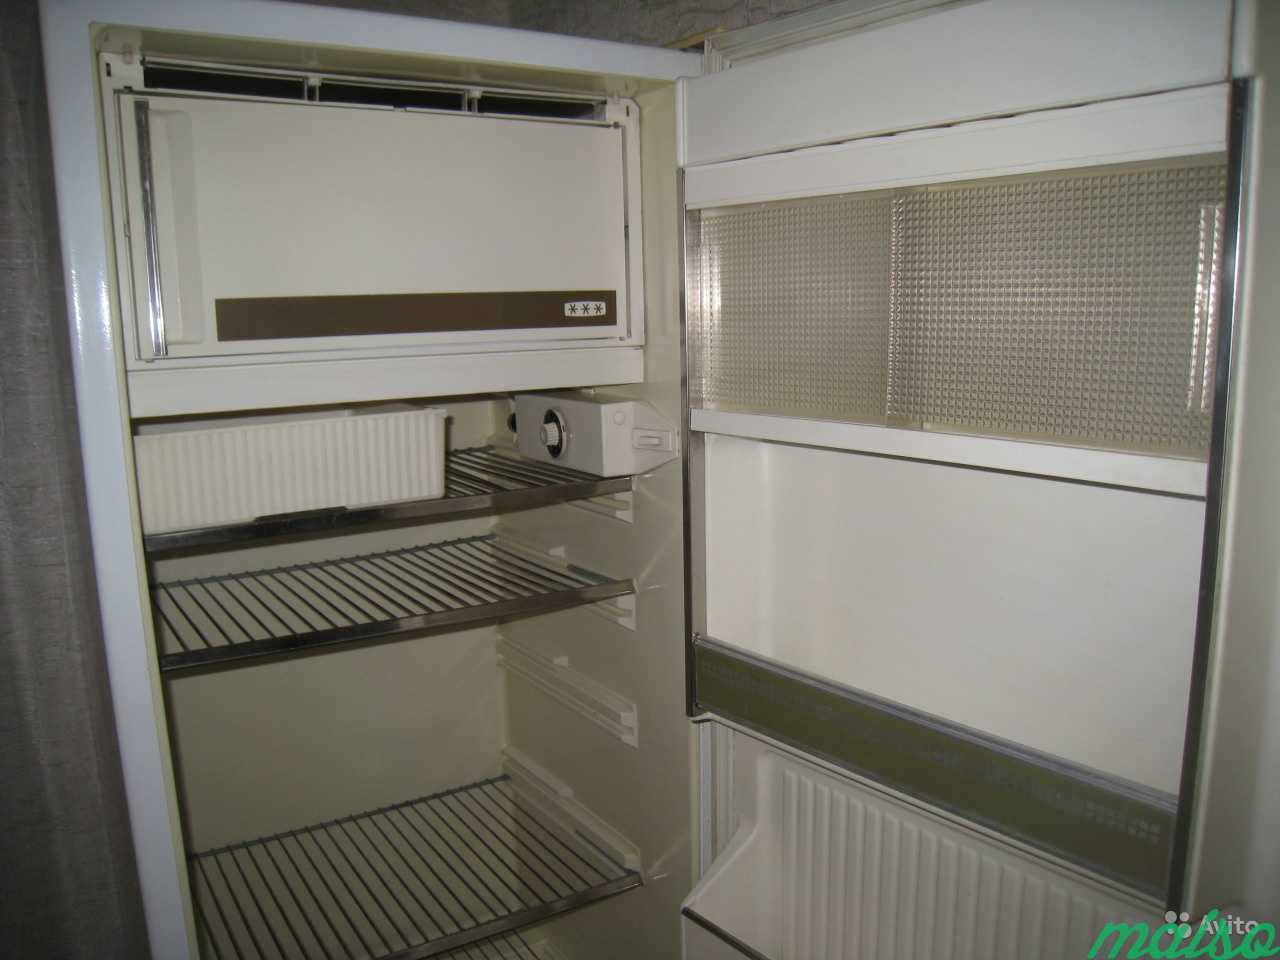 Холодильник Минск 16 в Москве. Фото 3